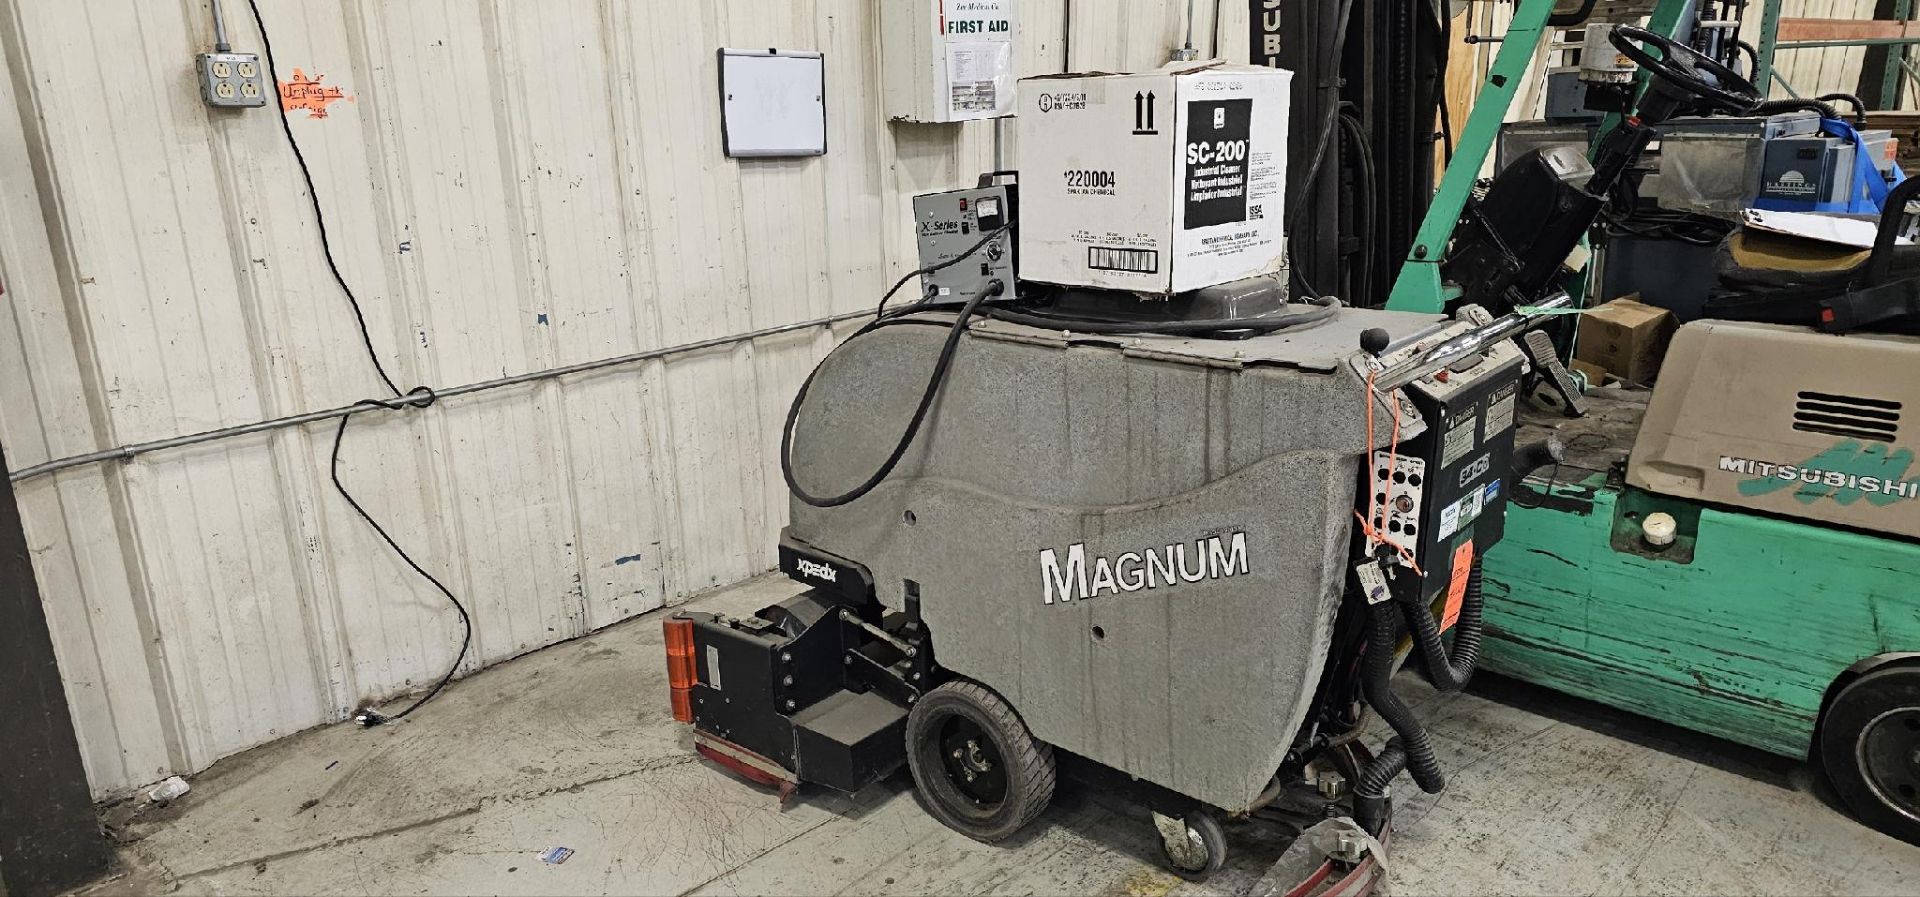 Factory Cat Magnum 34C Floor Scrubber - Image 3 of 4